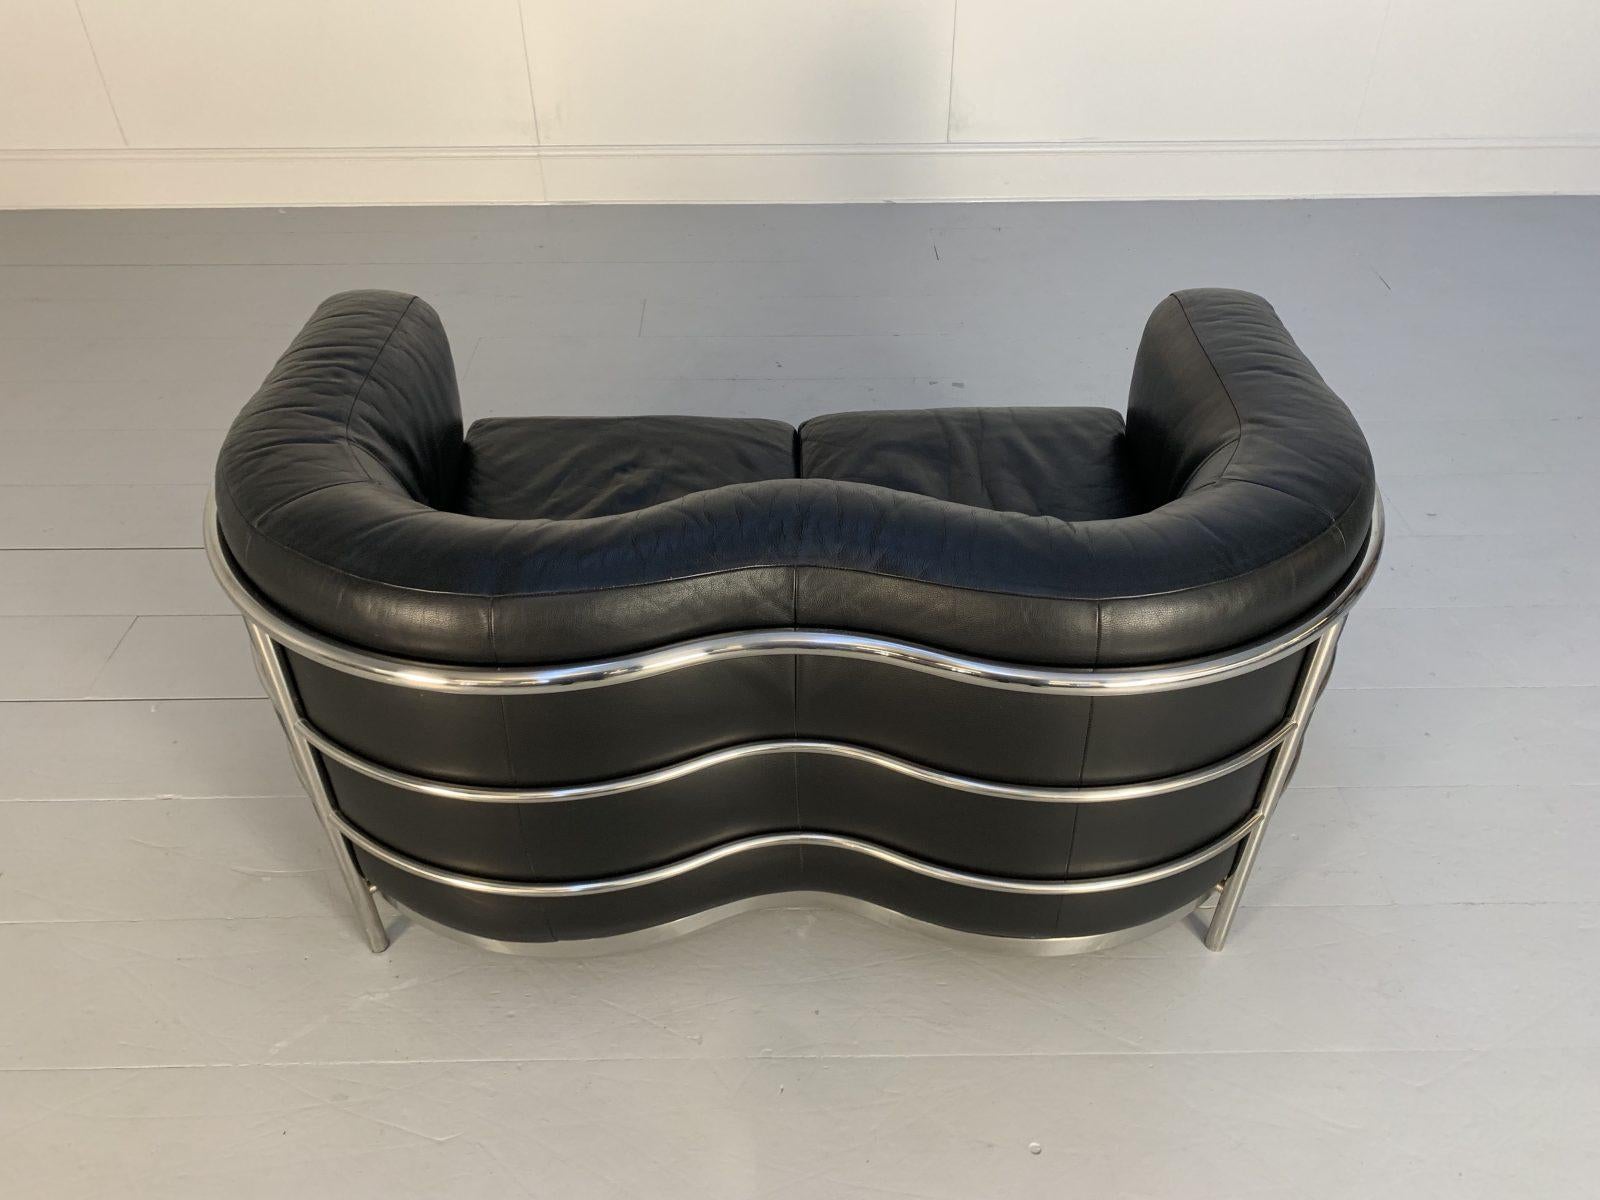 Zanotta “Onda” Sofa – 2-Seat – in Black “Scozia” Leather and Chrome For Sale 7